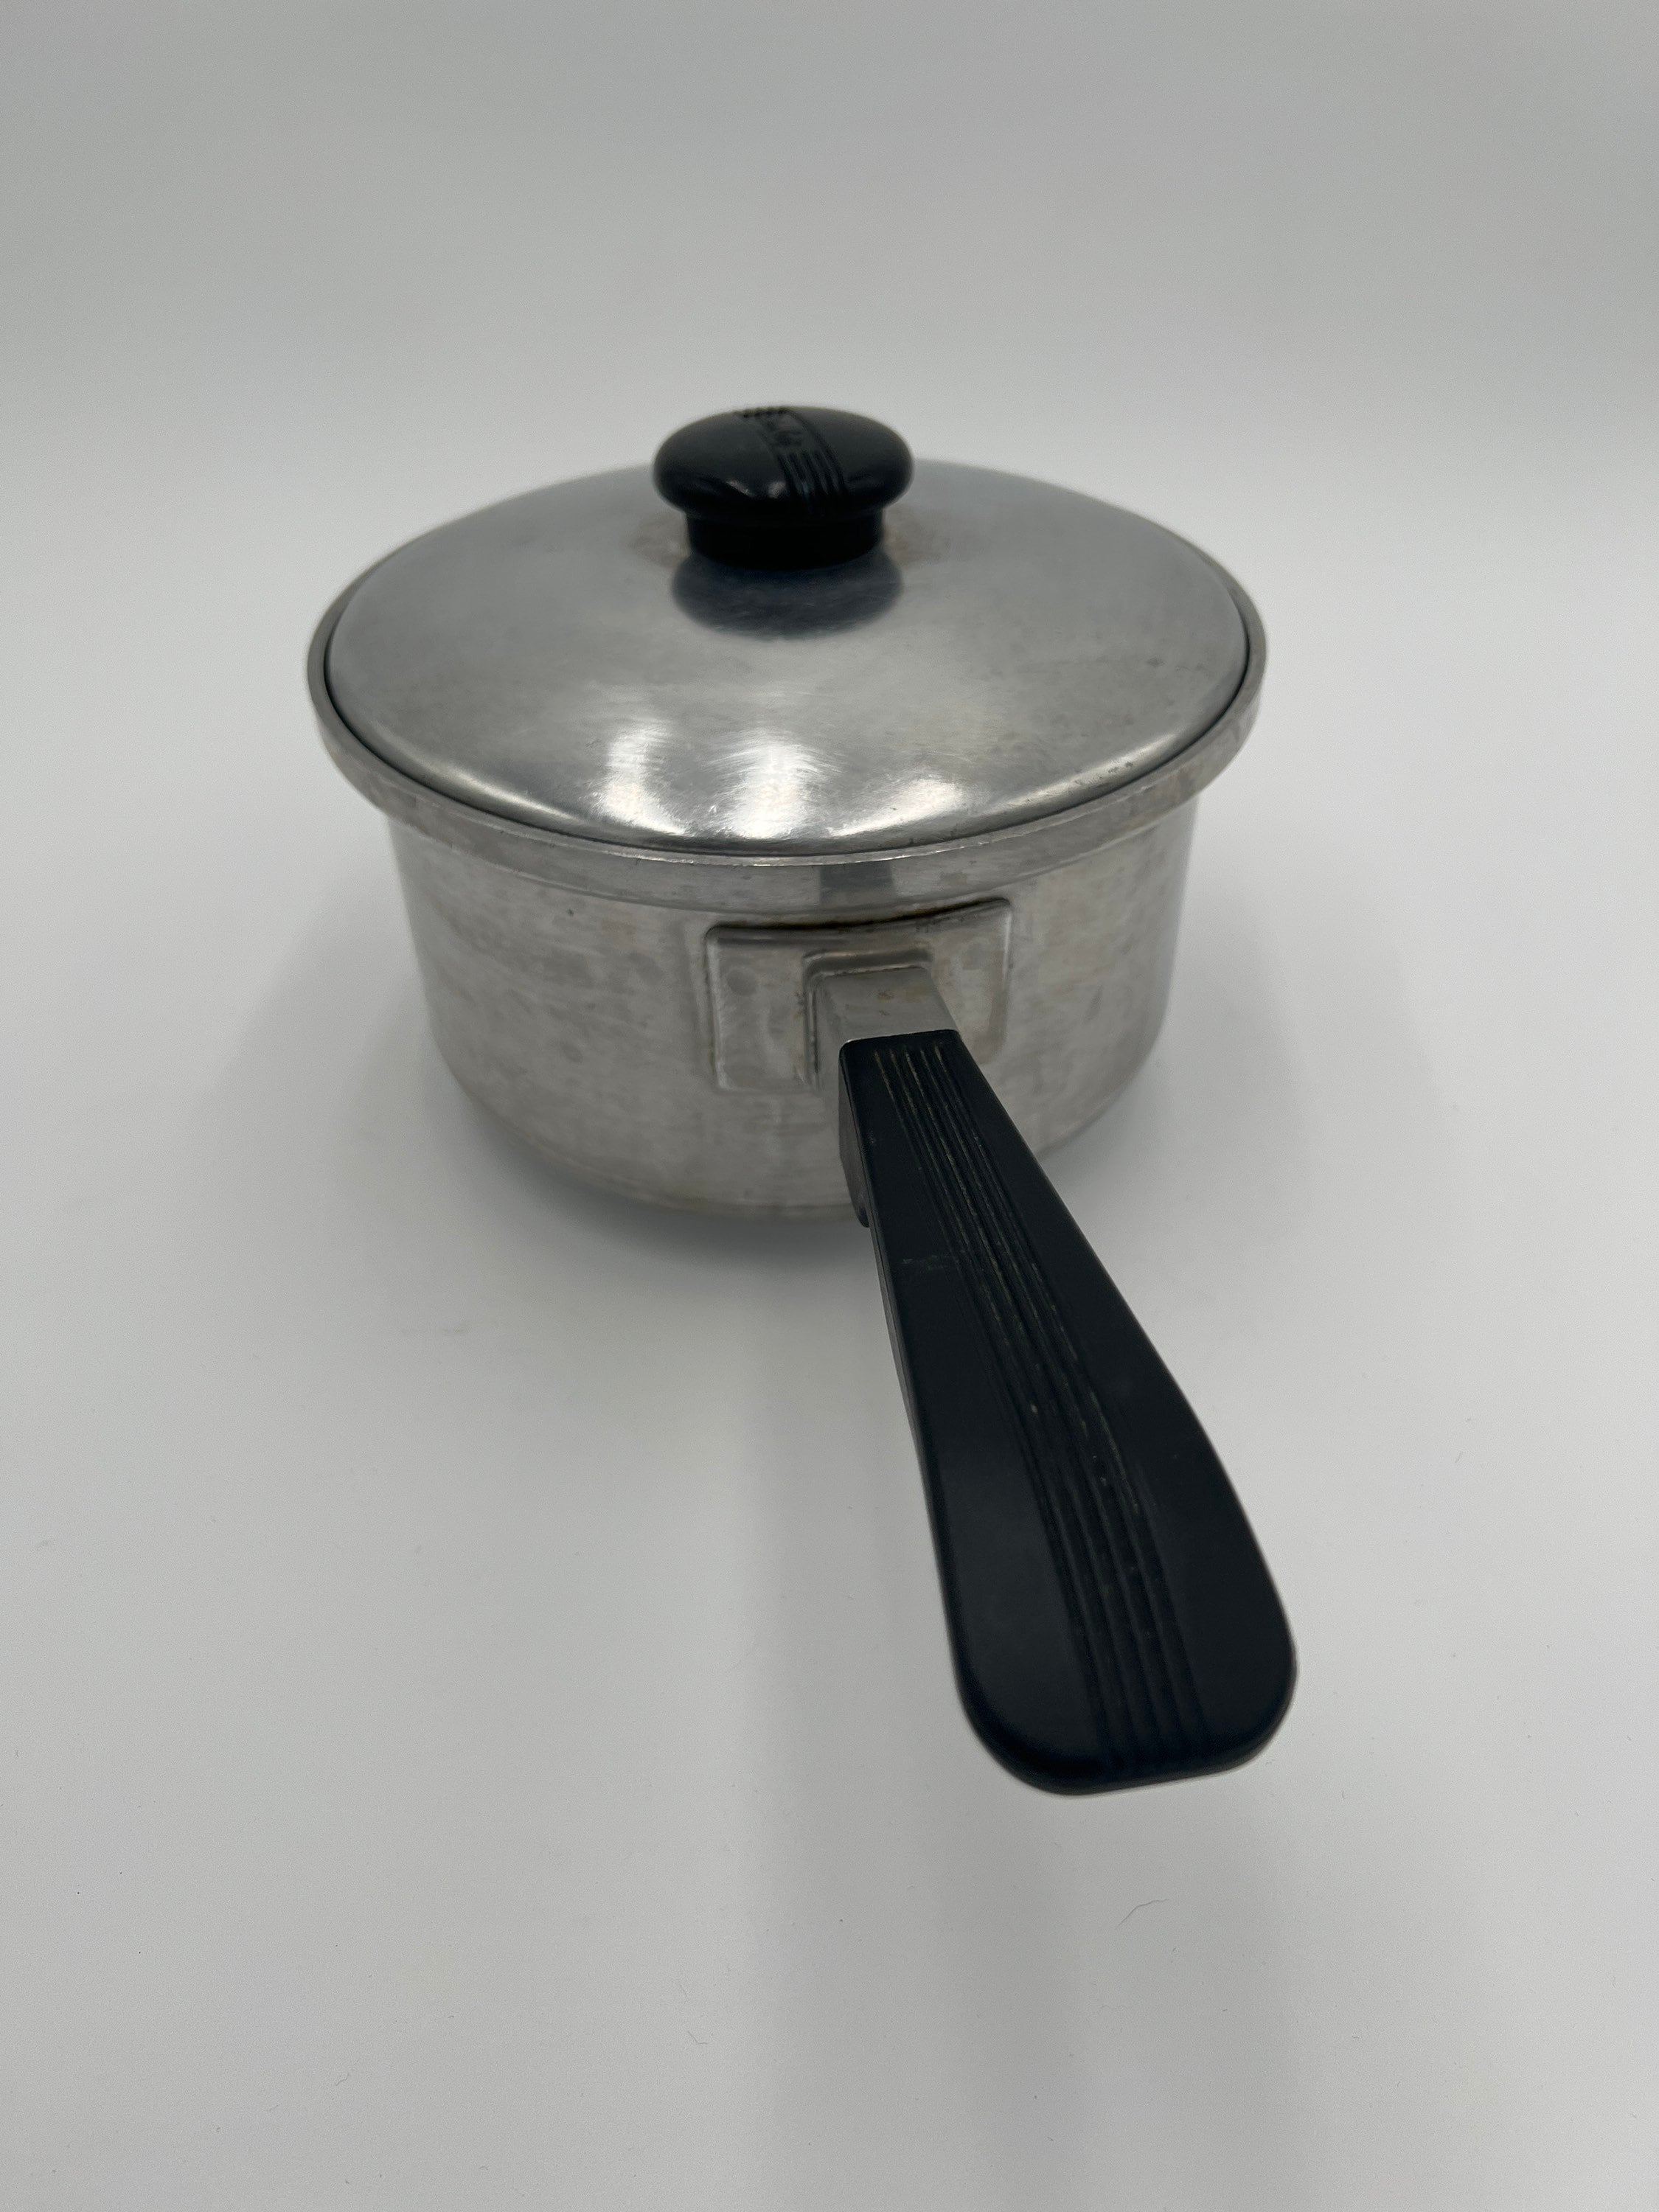 Vintage WEST BEND Aluminum Double Boiler Pot Pan 1 1/2 Qt